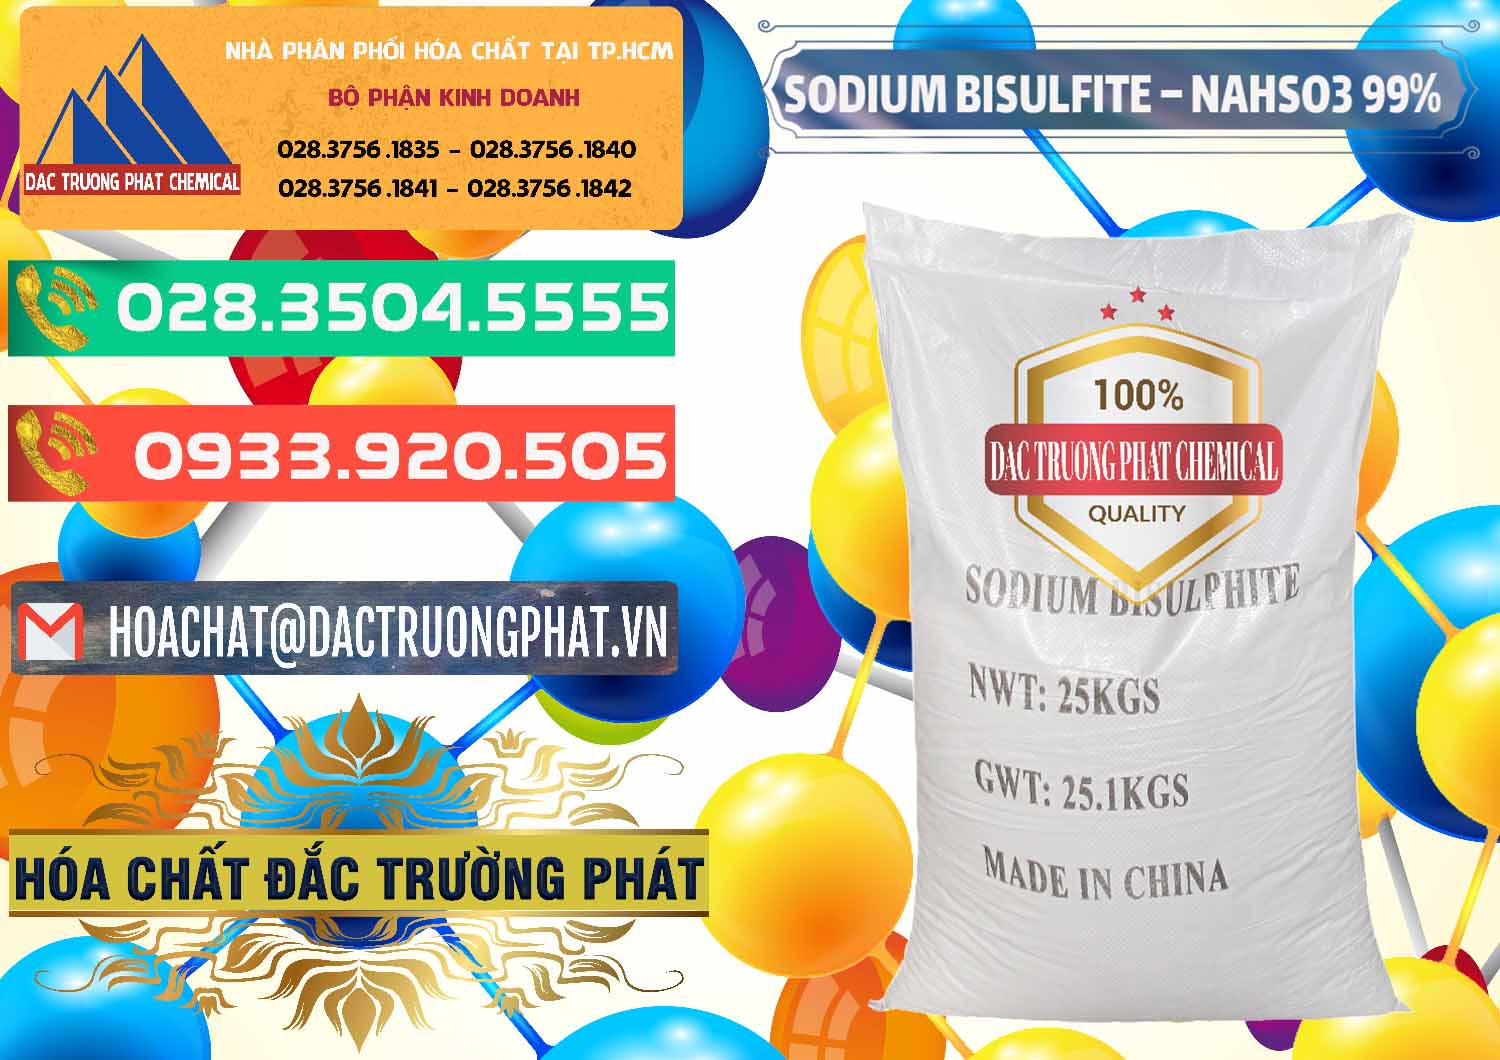 Công ty chuyên cung cấp và bán Sodium Bisulfite – NAHSO3 Trung Quốc China - 0140 - Đơn vị chuyên nhập khẩu & phân phối hóa chất tại TP.HCM - congtyhoachat.com.vn